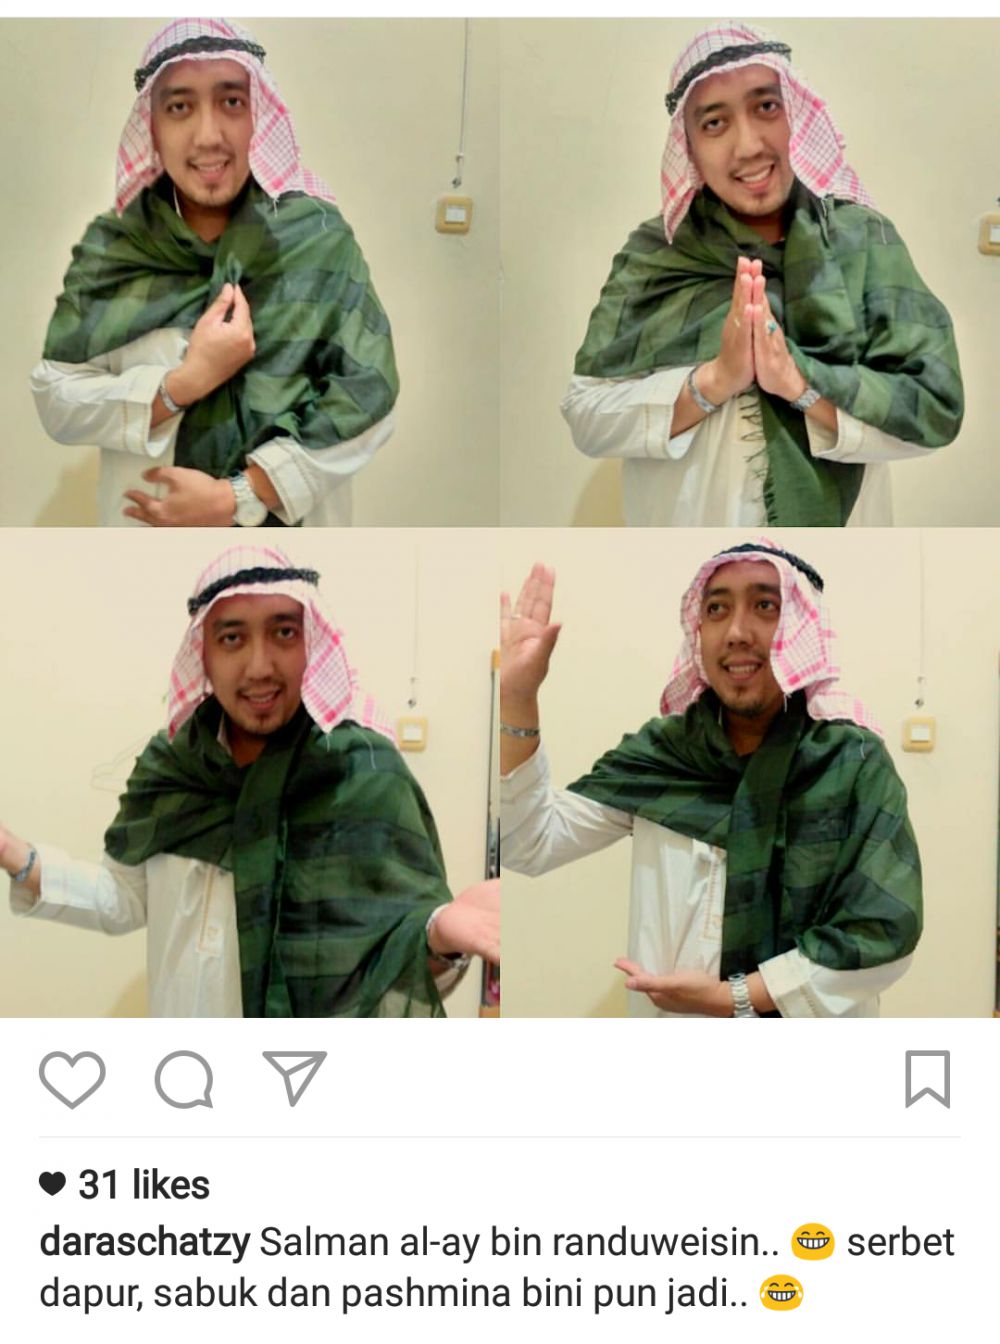 10 Meme 'Pangeran Arab Challenge' ini lucunya bikin terpingkal-pingkal